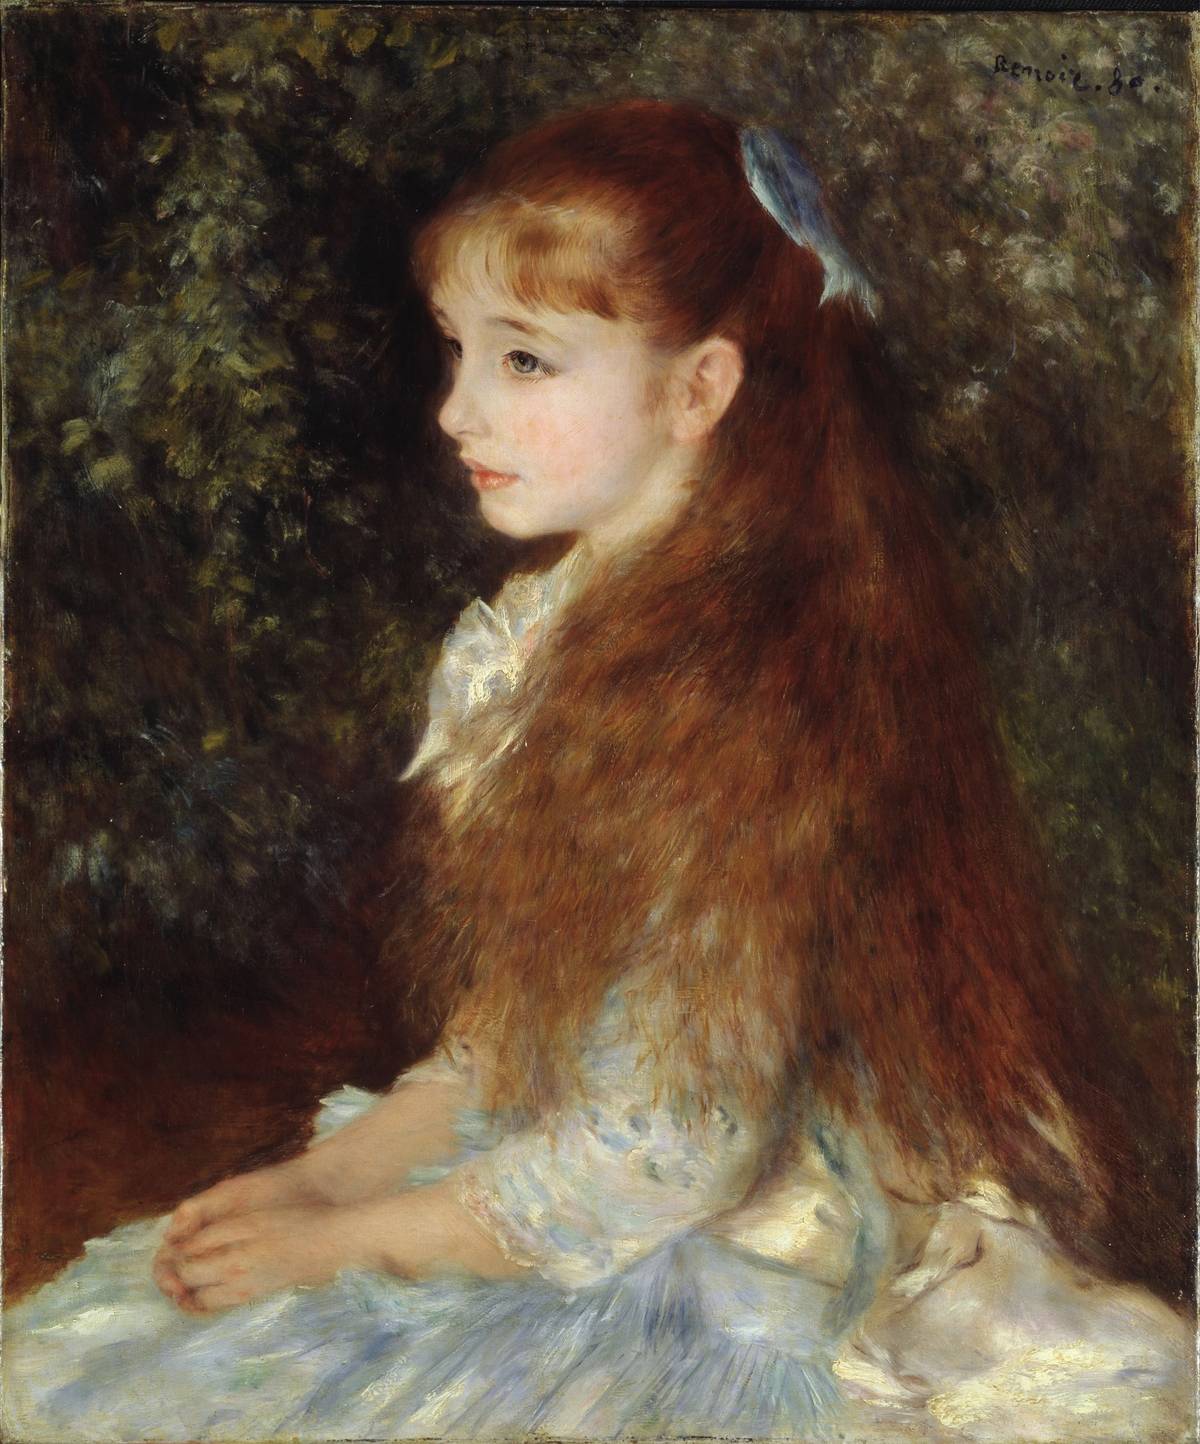 Pierre-Auguste Renoir, 'Portrait of Irène Cahen d’Anvers,' ca. 1880